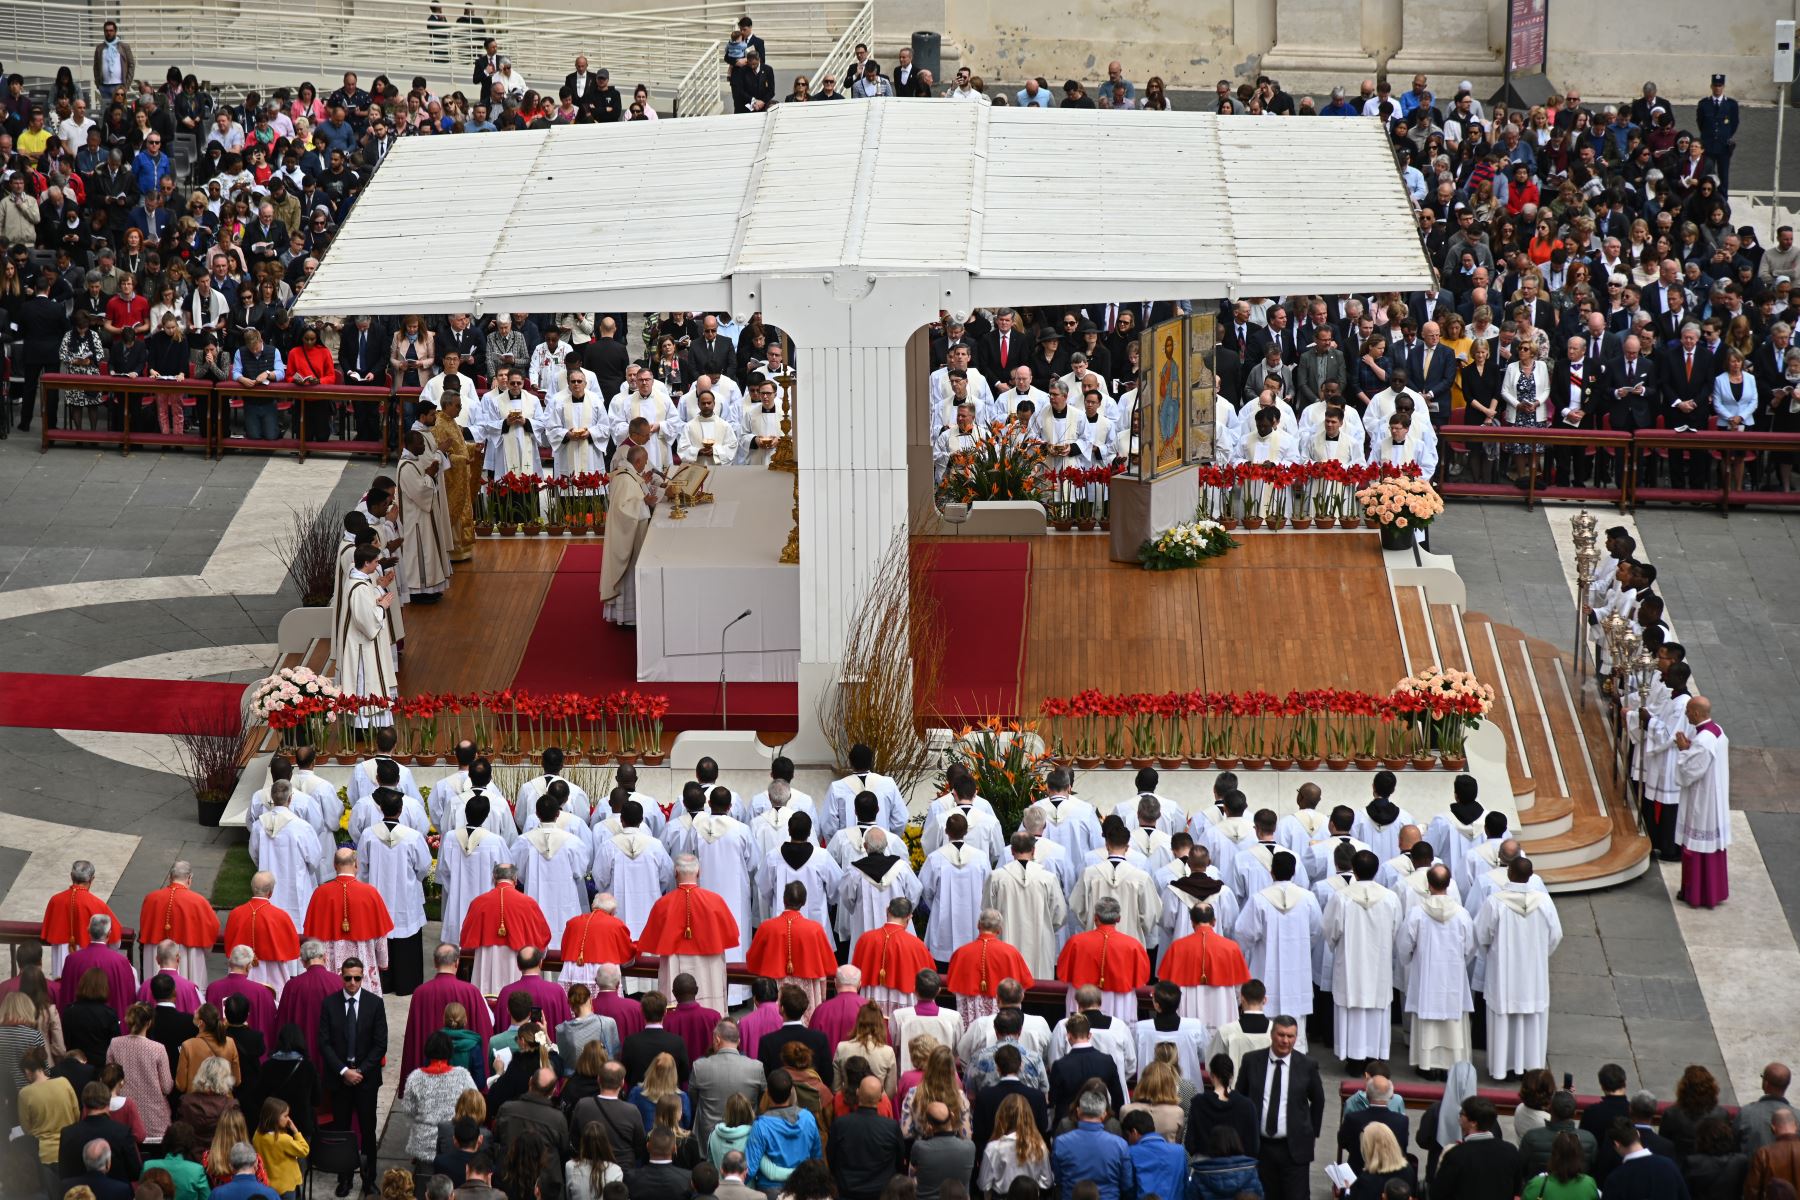 Papa Francisco celebra misa en Vaticano.Los cristianos de todo el mundo están celebrando la Semana Santa, conmemorando la crucifixión de Jesucristo, que lleva a su resurrección en la Pascua.
Foto: AFP